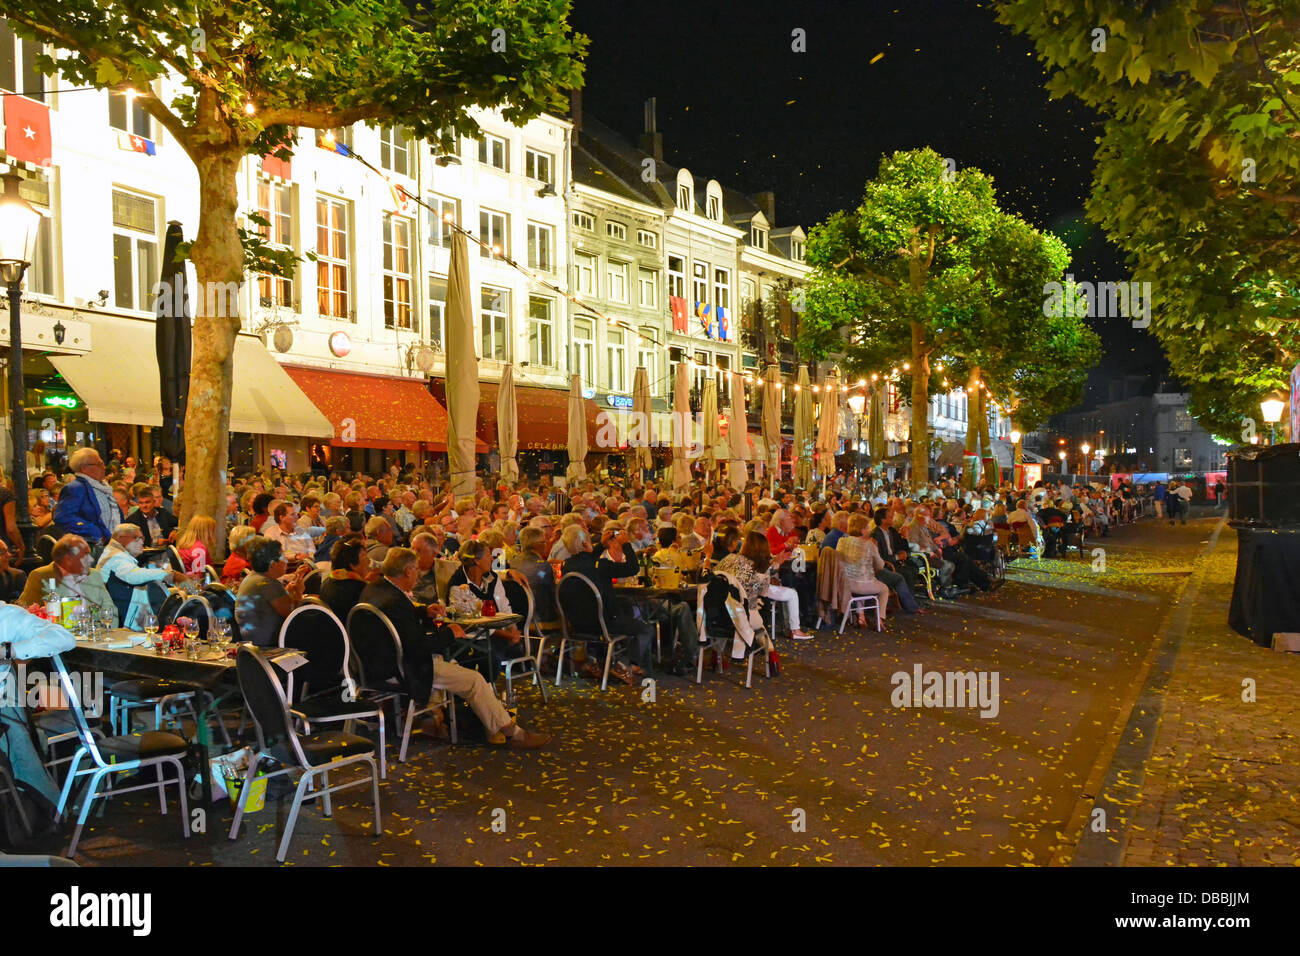 In der Straßenszene am Vrijthof Square in Maastricht City können Sie das Orchester von André Rieu beobachten, das am Sommerabend ein Musikkonzert in der EU aufführt Stockfoto